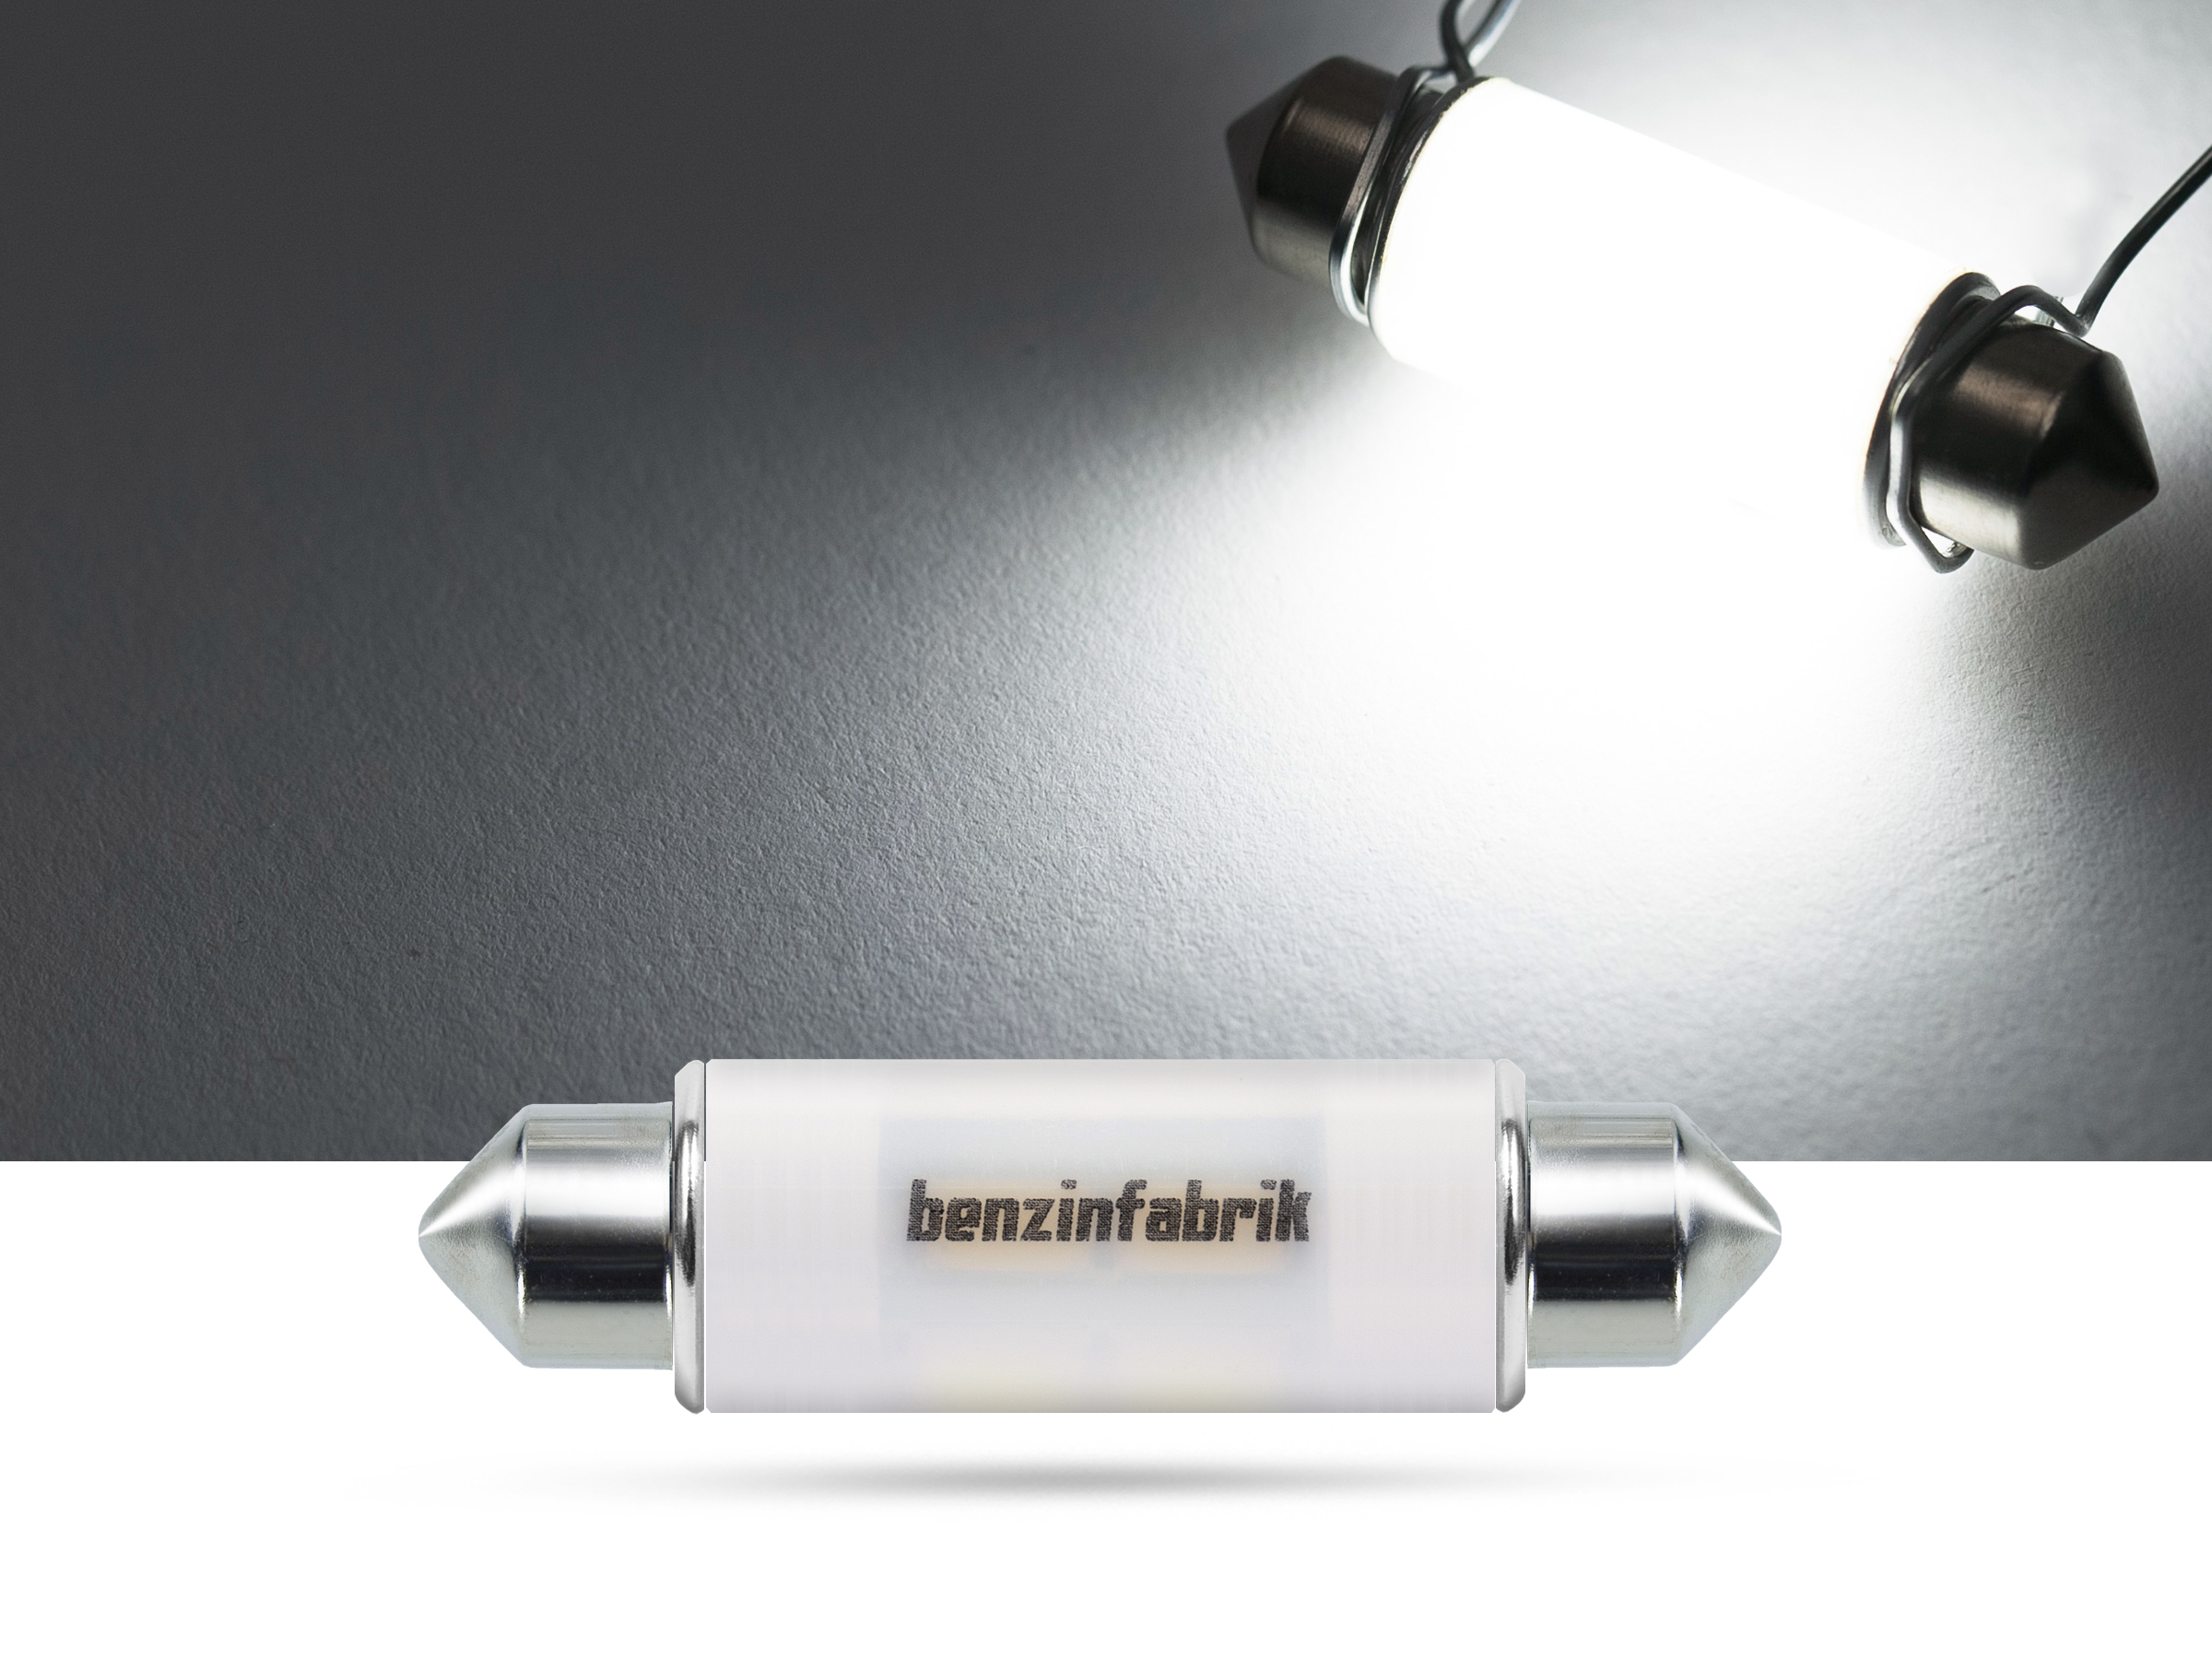 42mm 2 Watt SMD LED Soffitte Innenraumlicht, CAN-bus, weiss